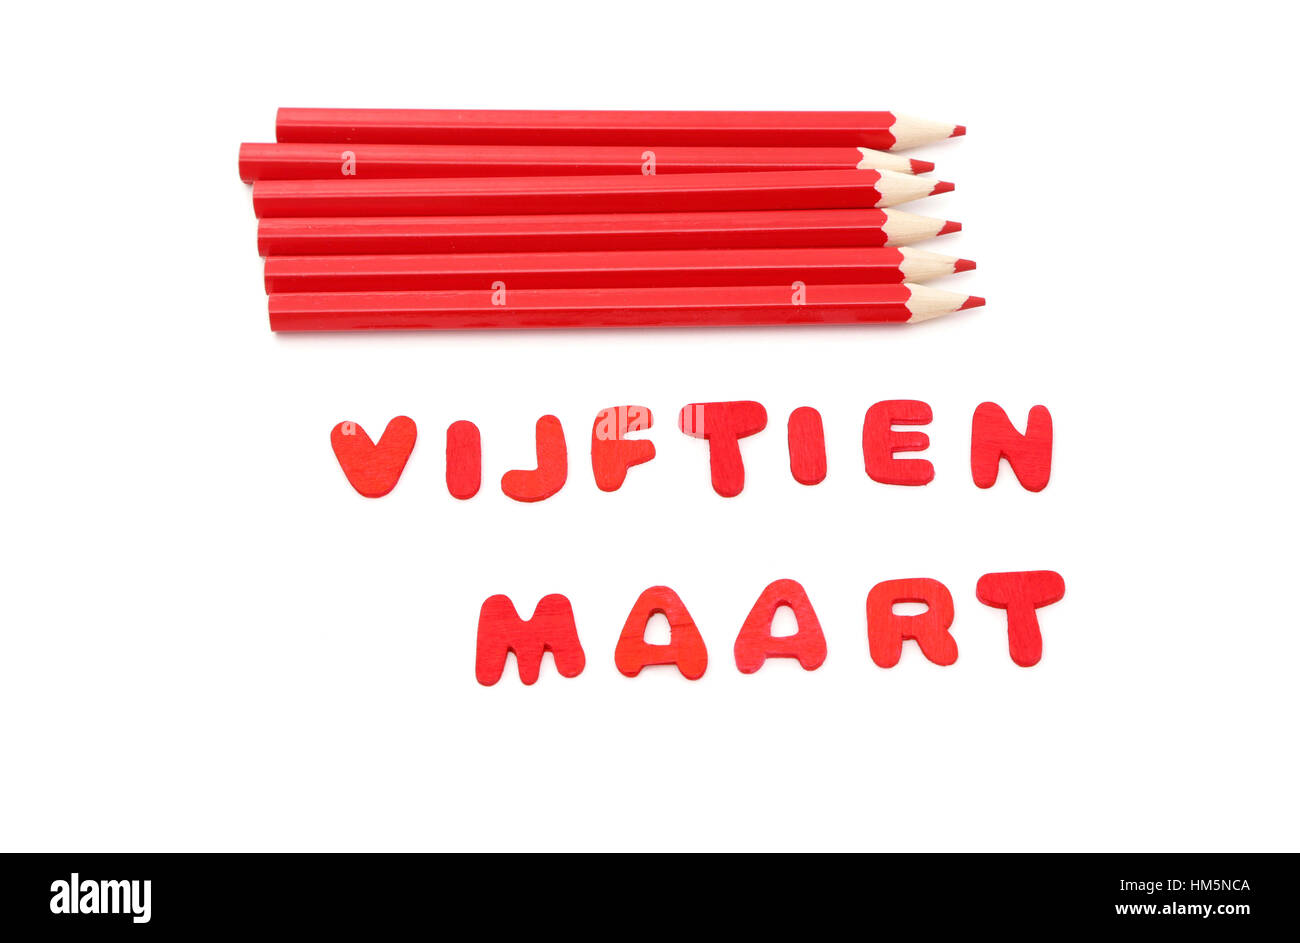 Rote Stifte und die Worte Vijftien Maart legen d. h. 15 März in niederländischer Sprache dem Tag nehmen die Wahlen in den Niederlanden Stockfoto